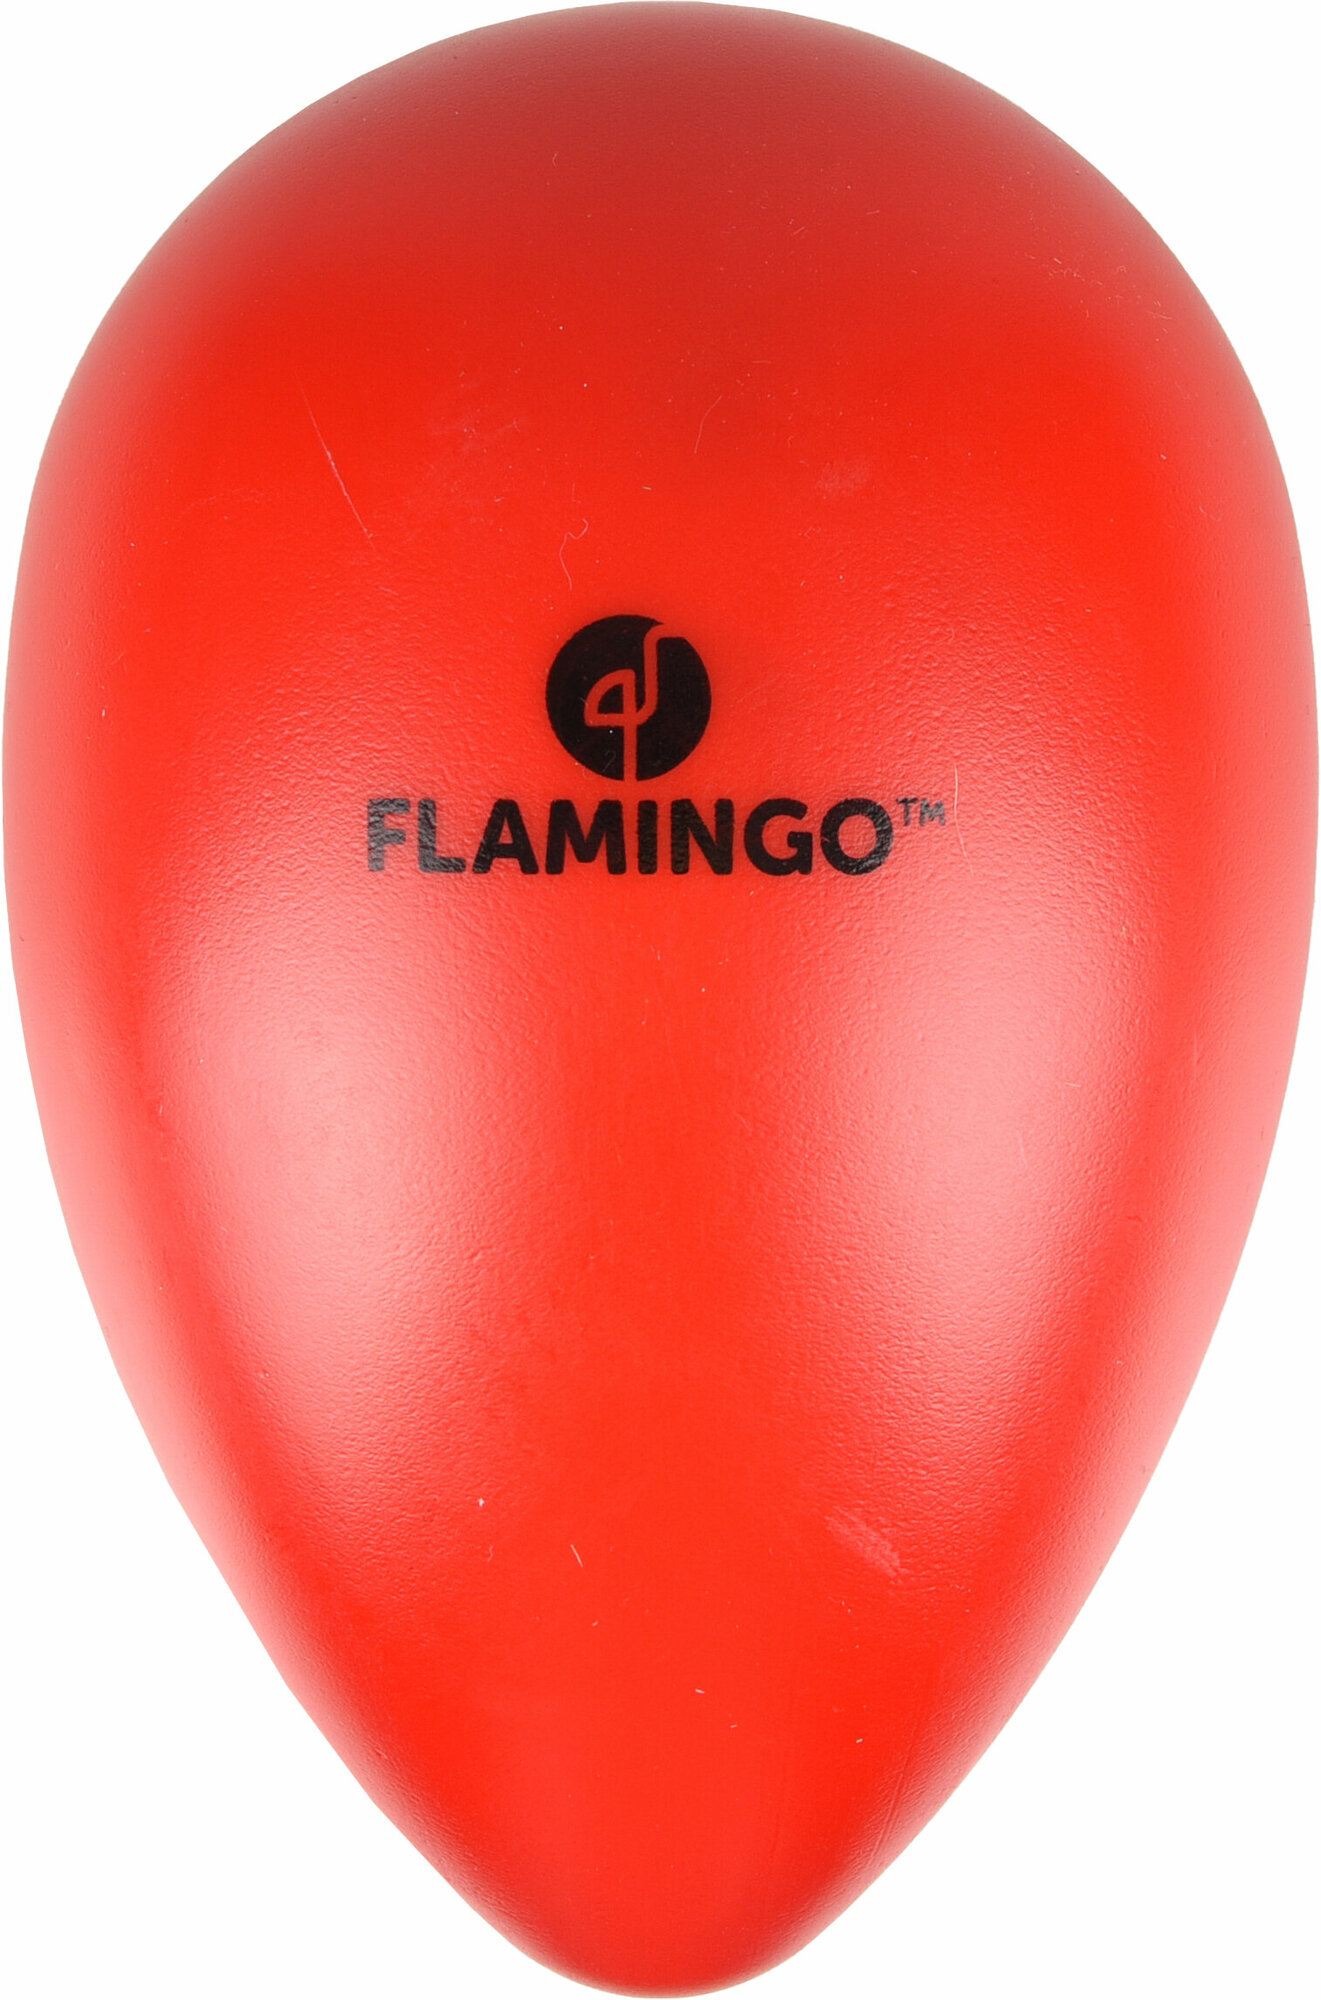 Игрушка Flamingo Яйцо для собак красная 16,5*25см пластик